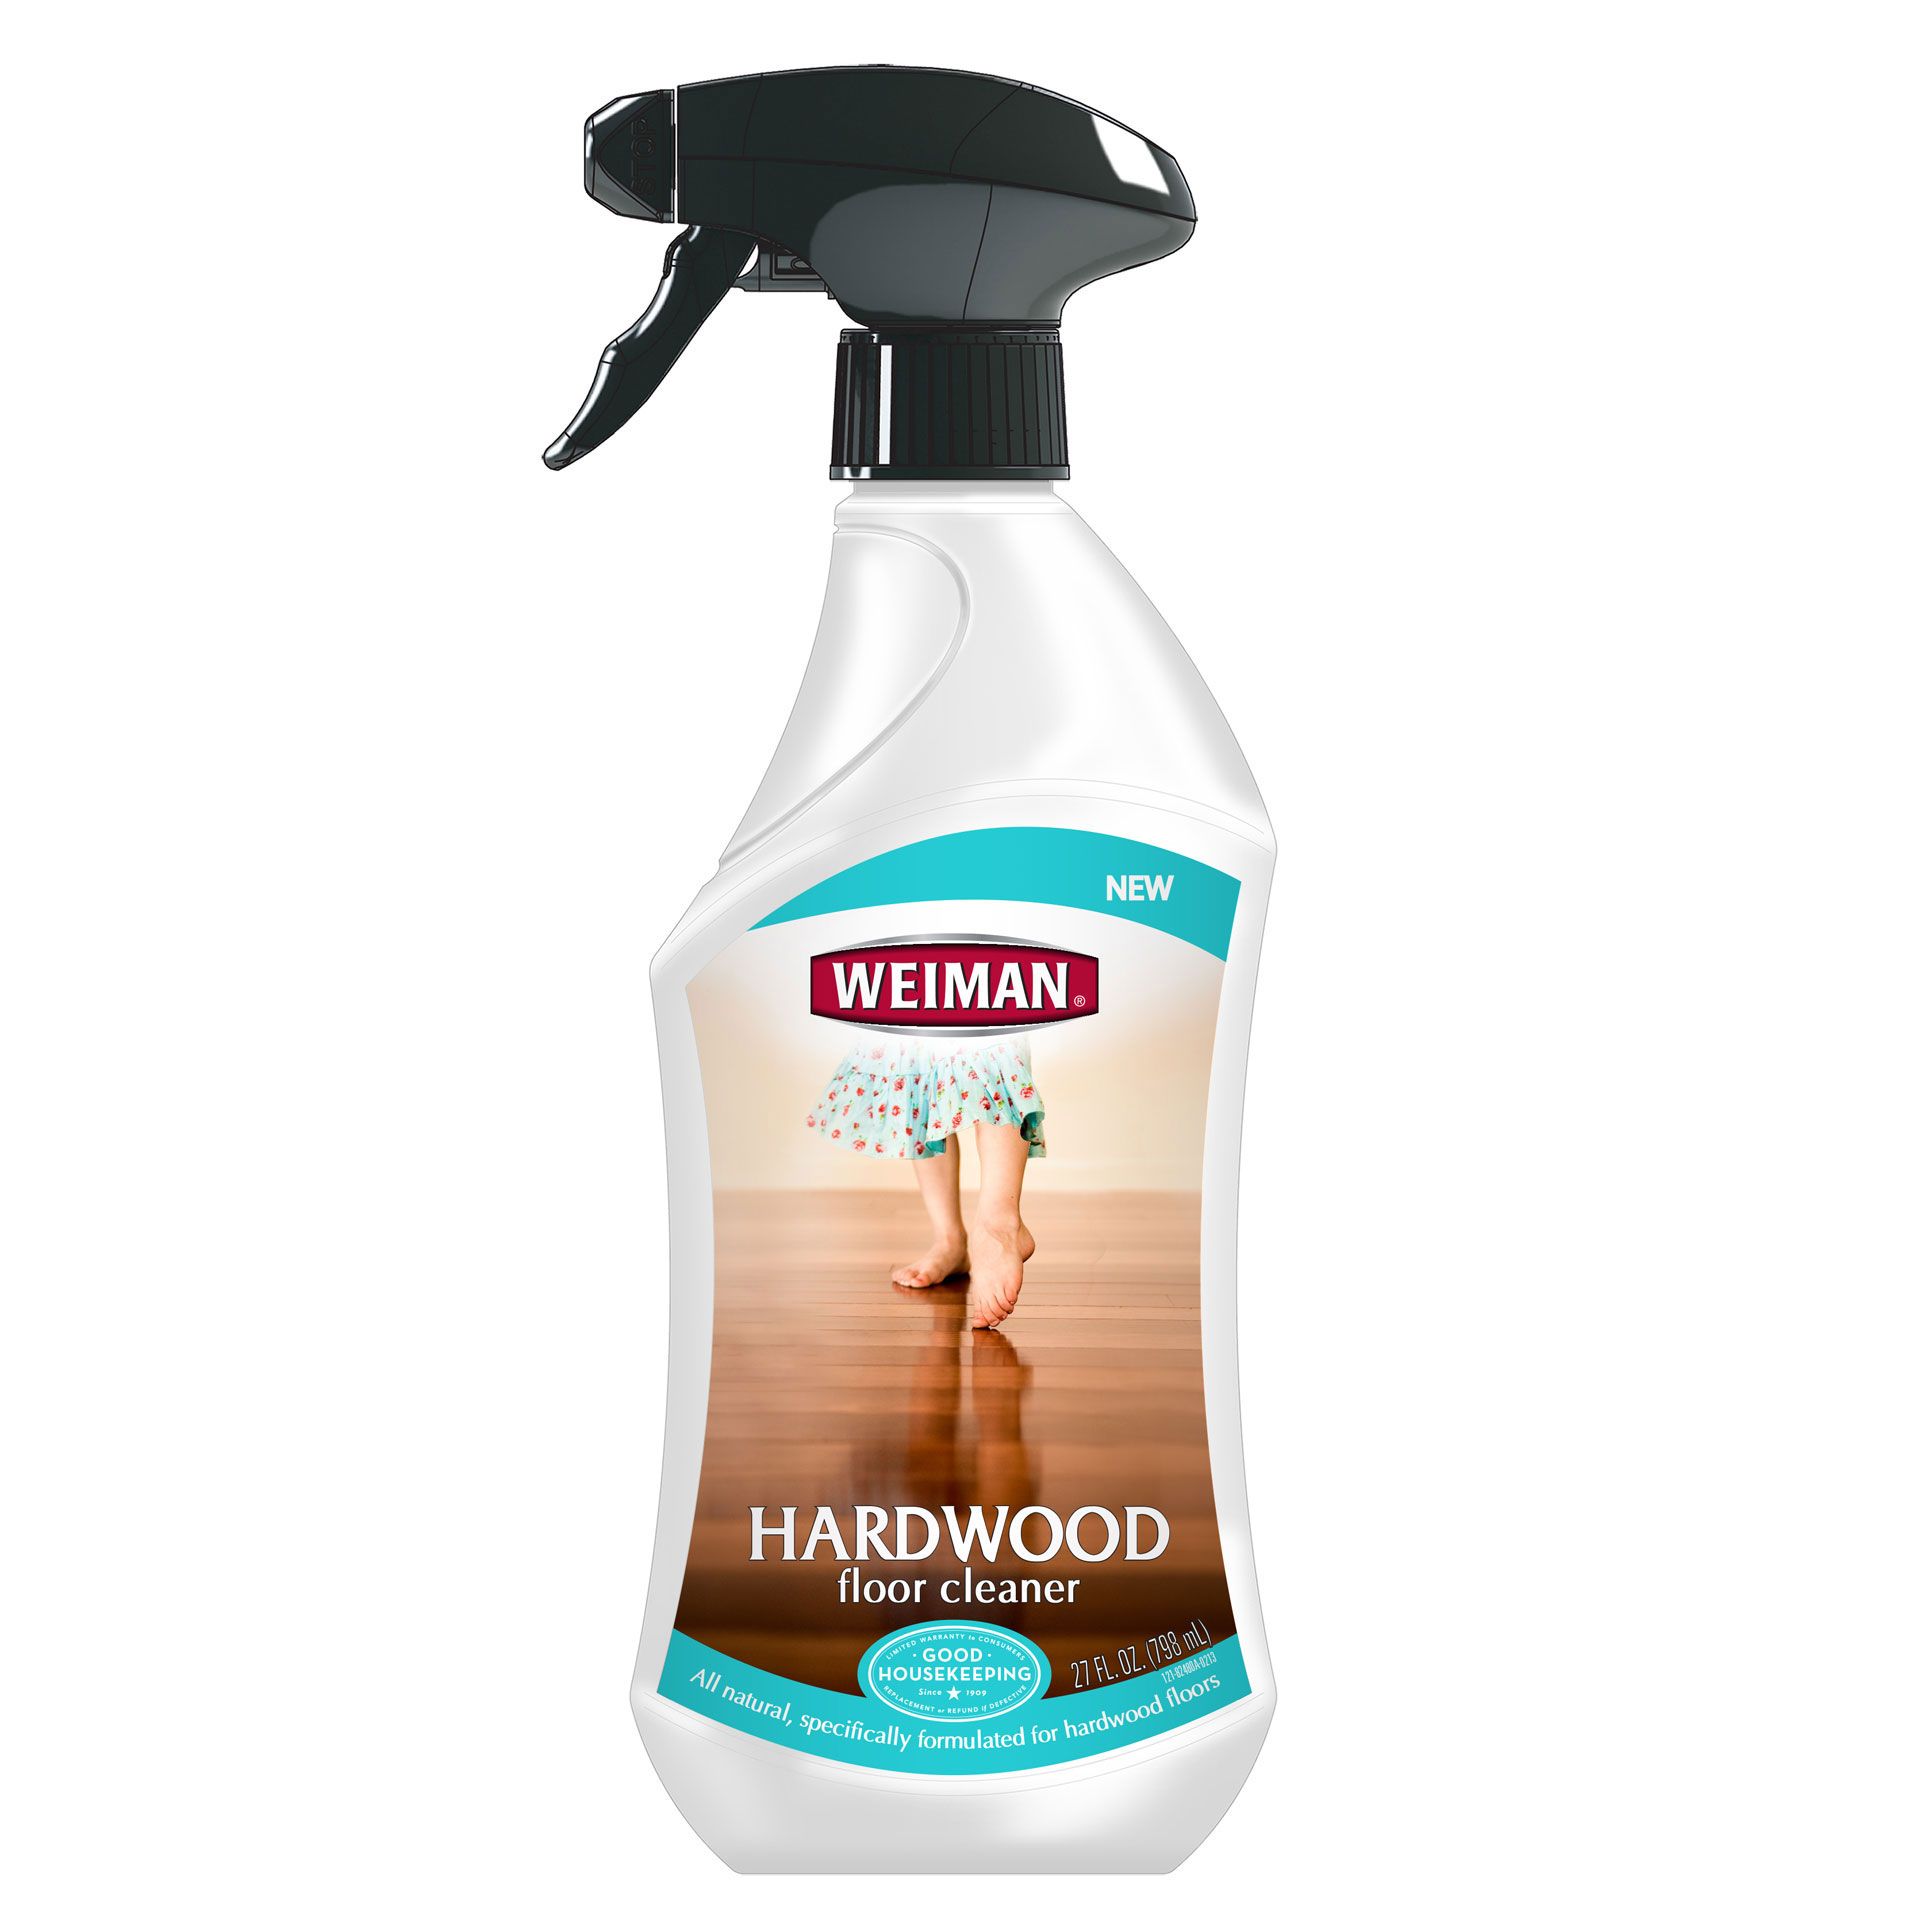 Weiman Hardwood Floor Cleaner Review, Zep Hardwood Floor Cleaner Reviews